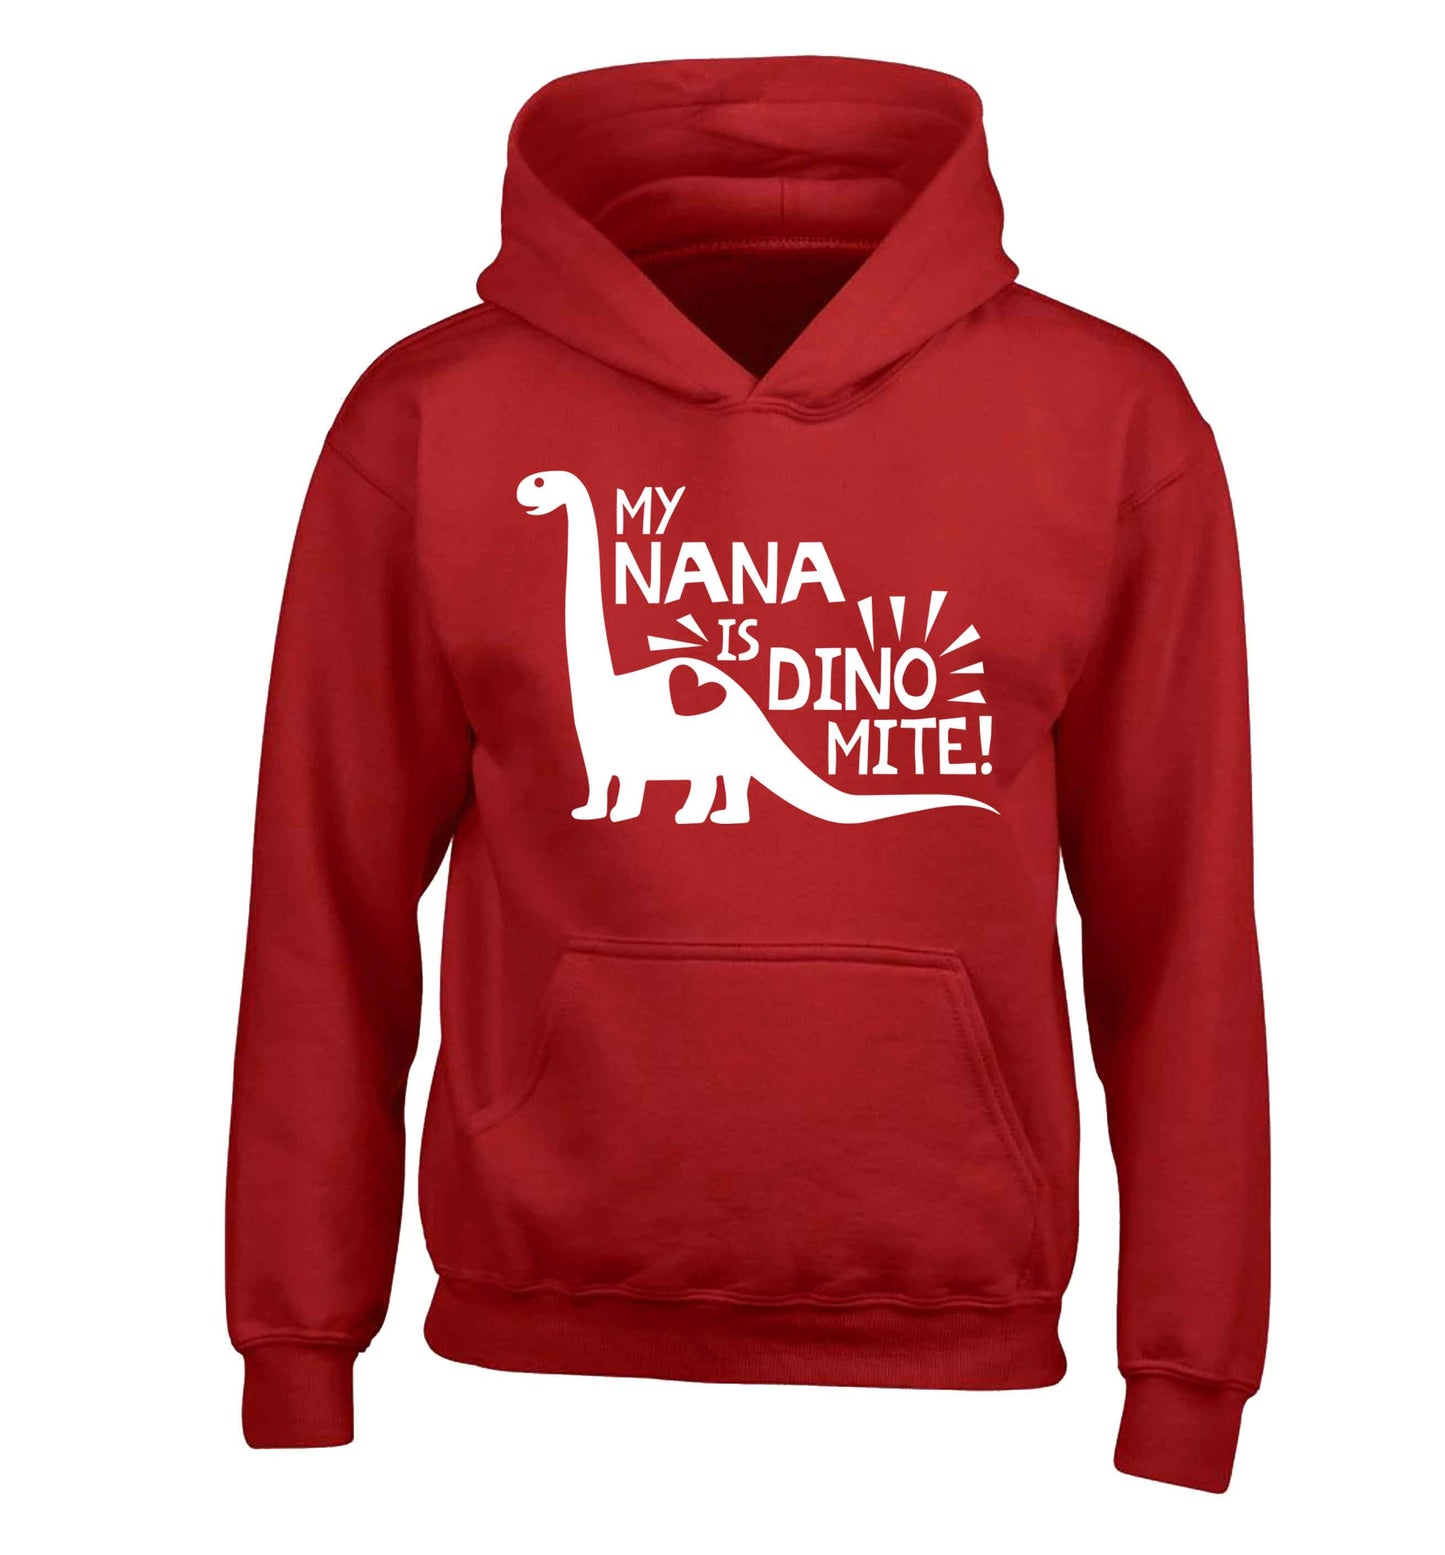 My nana is dinomite! children's red hoodie 12-13 Years